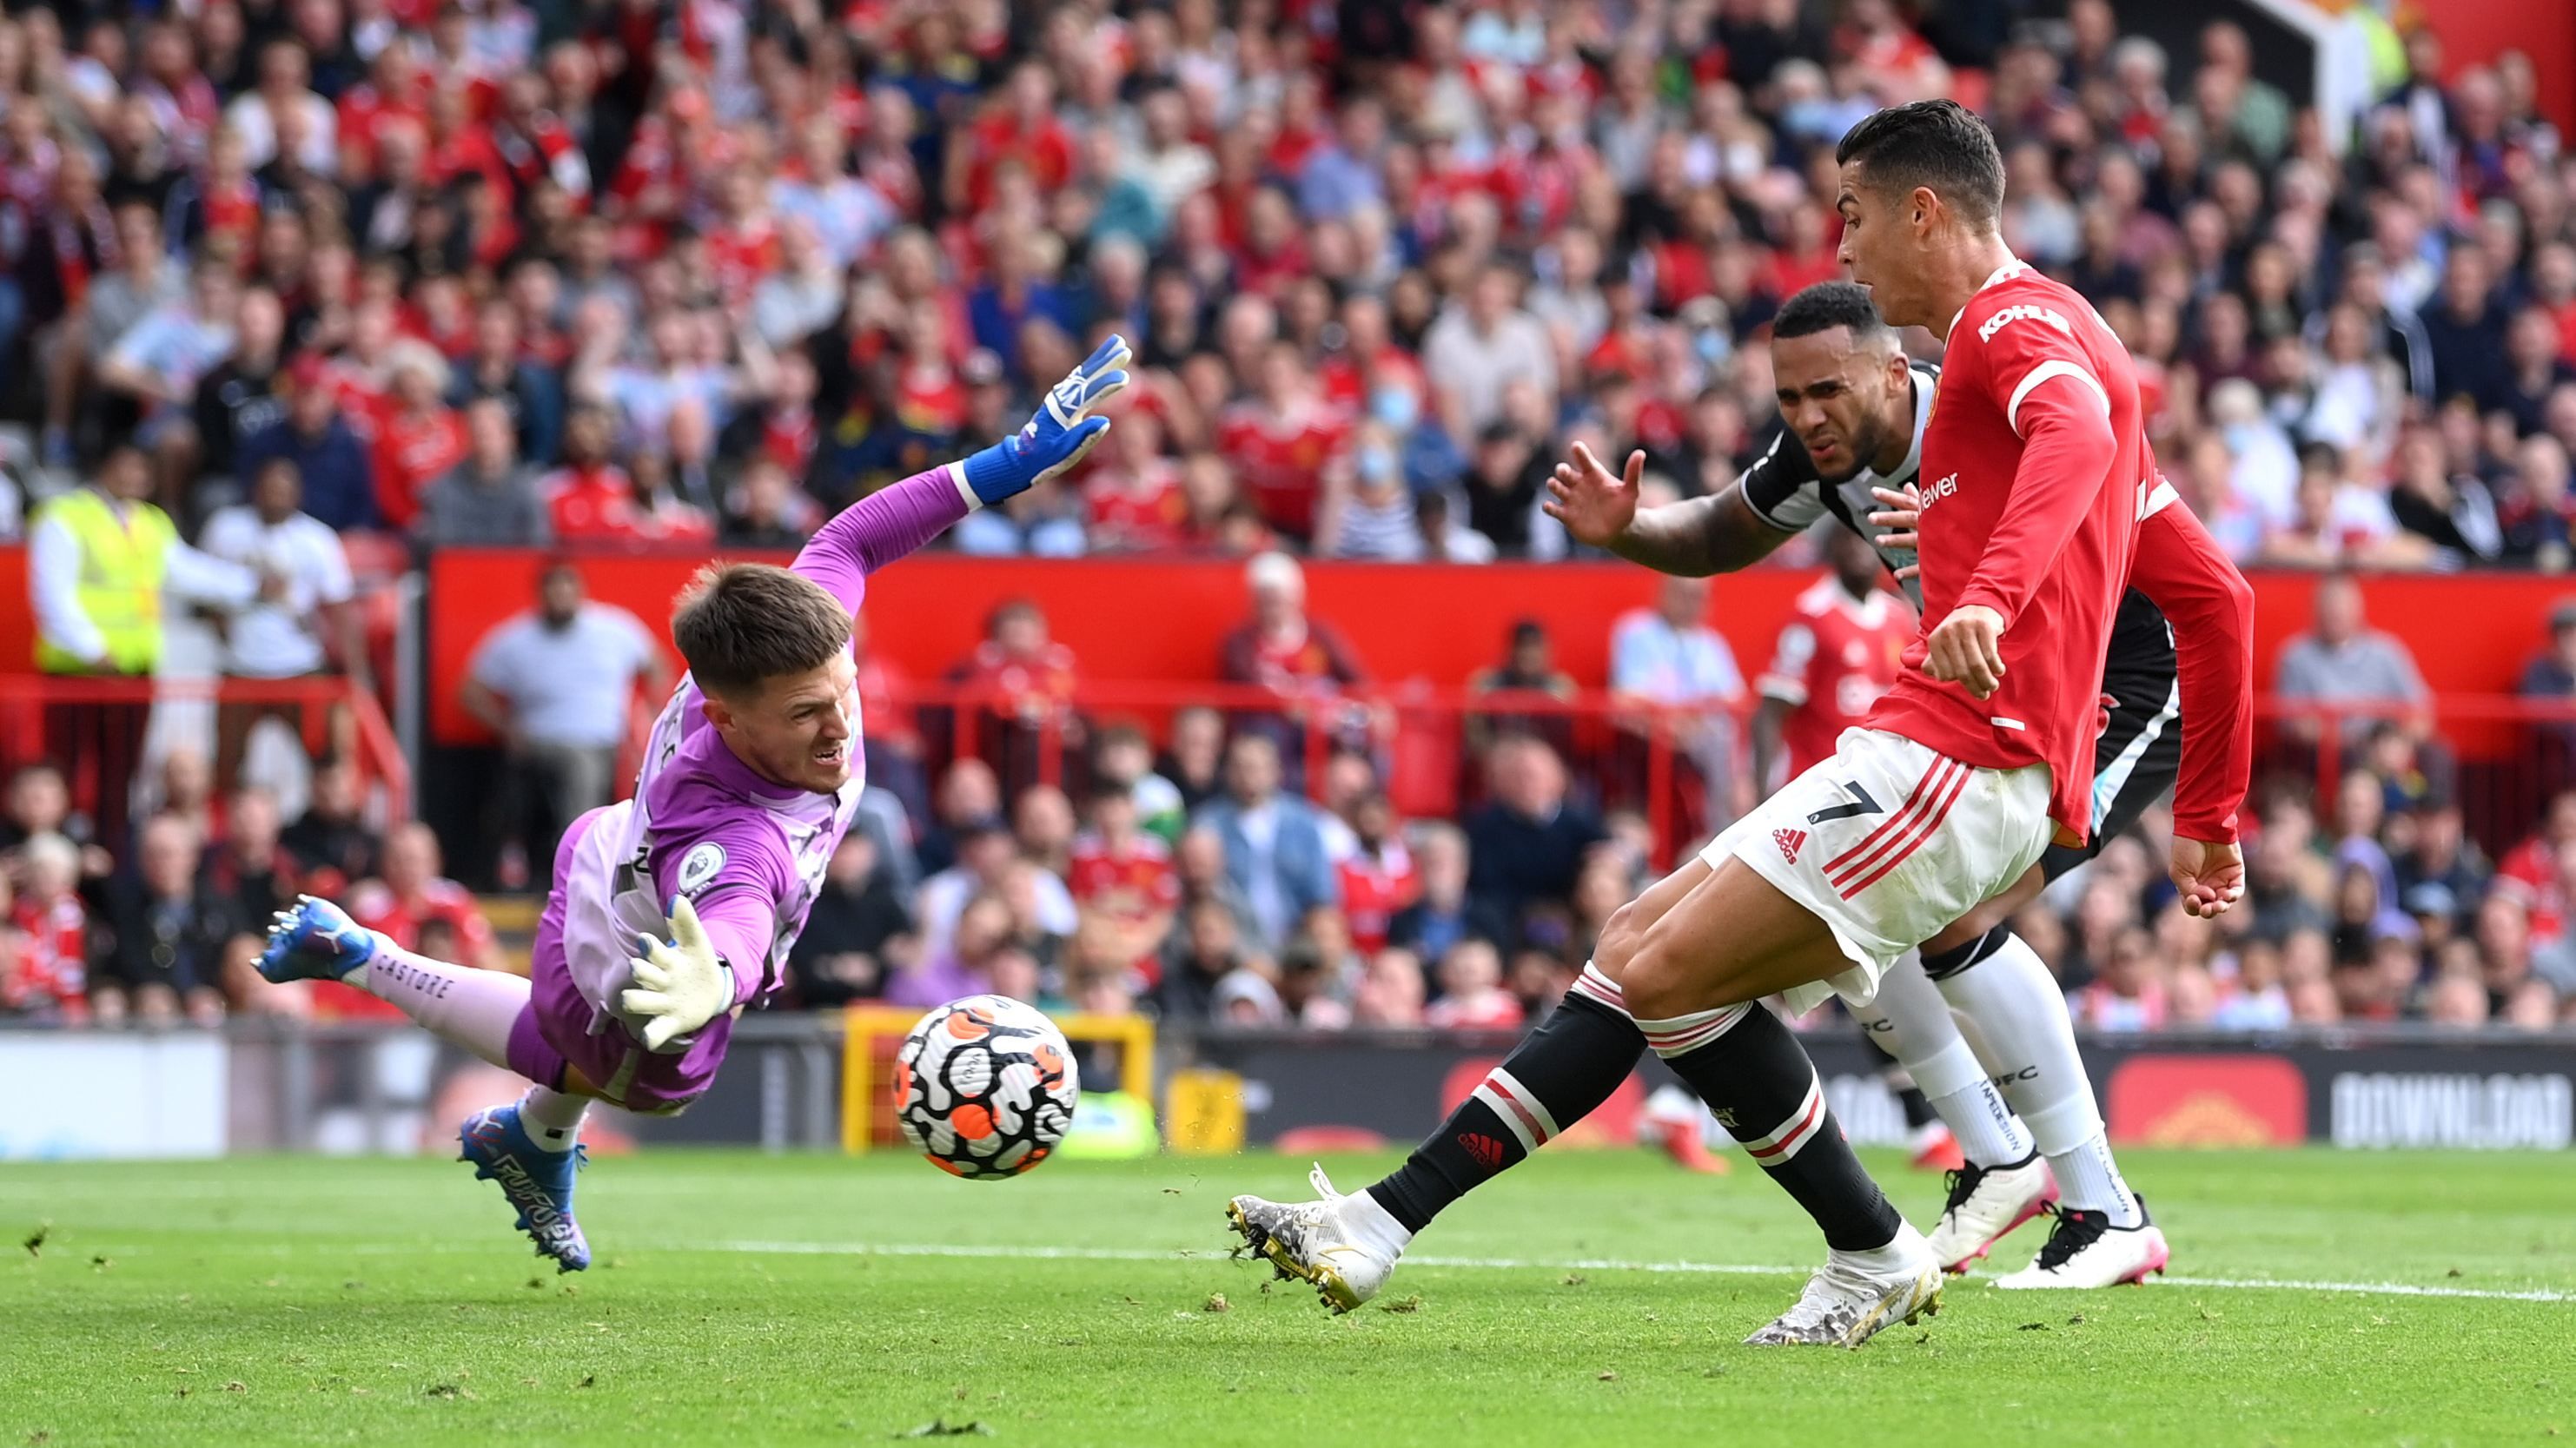 Роналду забил первый гол за Манчестер Юнайтед в дебютном матче: видео